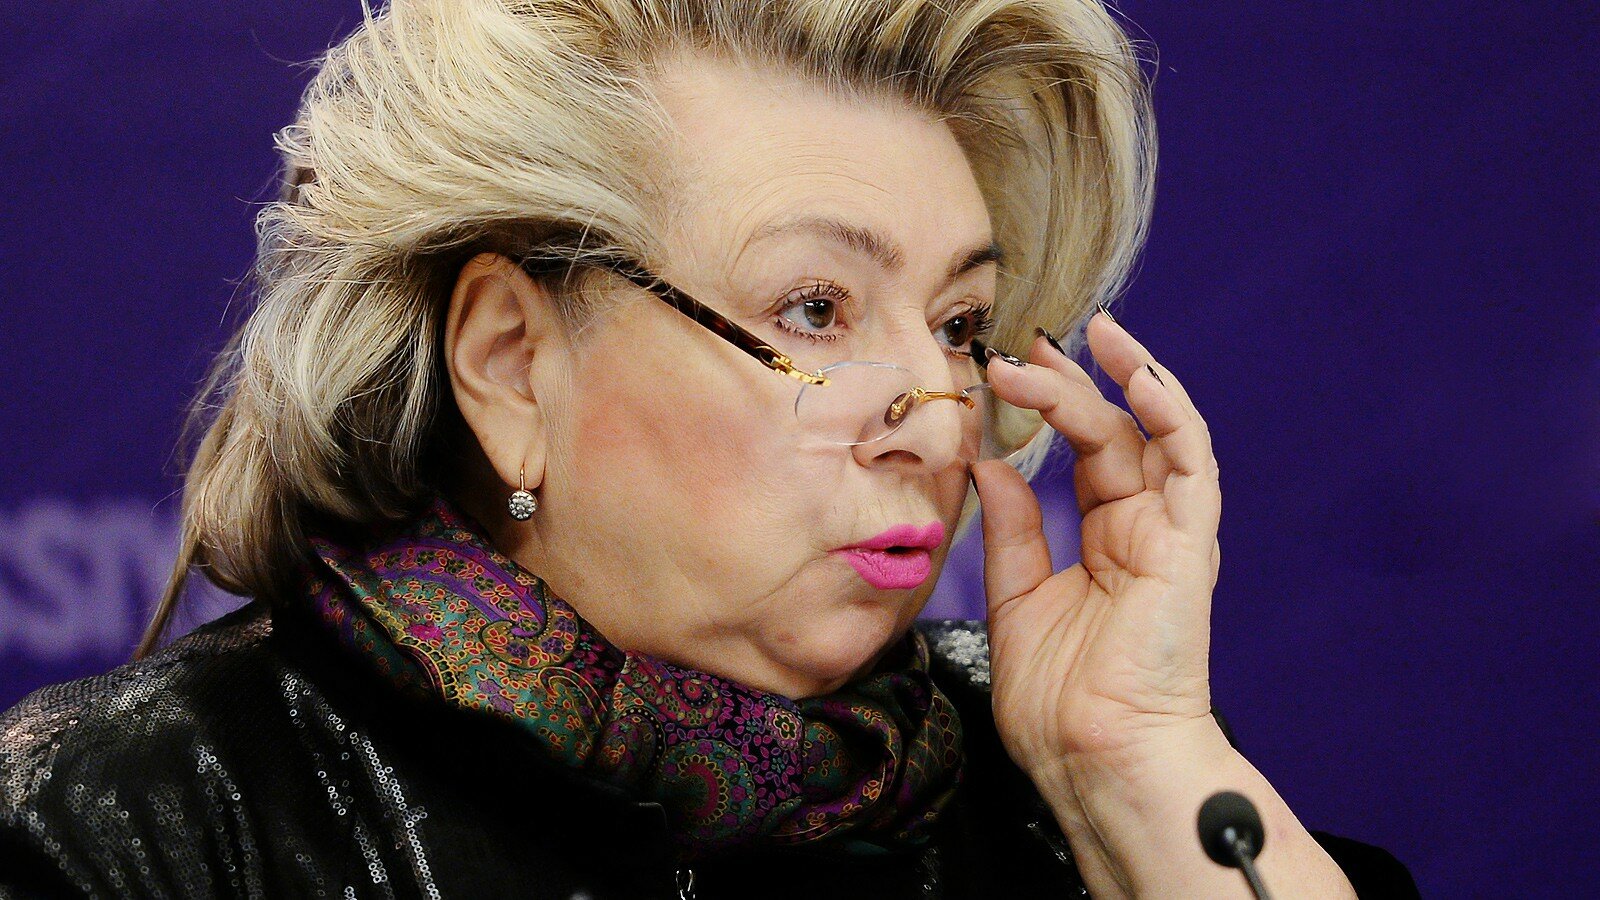 Тарасова: "Хуже Мутко вряд ли кто-то будет, и Колобкова не по делу туда засунули"